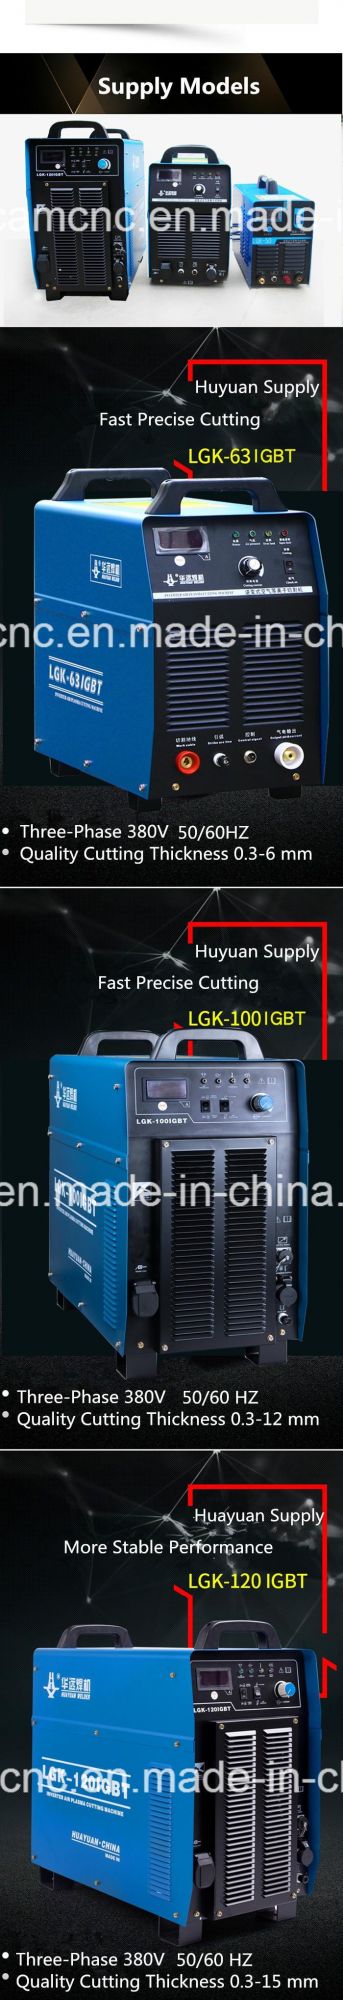 China Rust-Proof Machine Body CNC Plasma Cut Cutter Cutting Machine 0-30mm Carbon Metal Steel